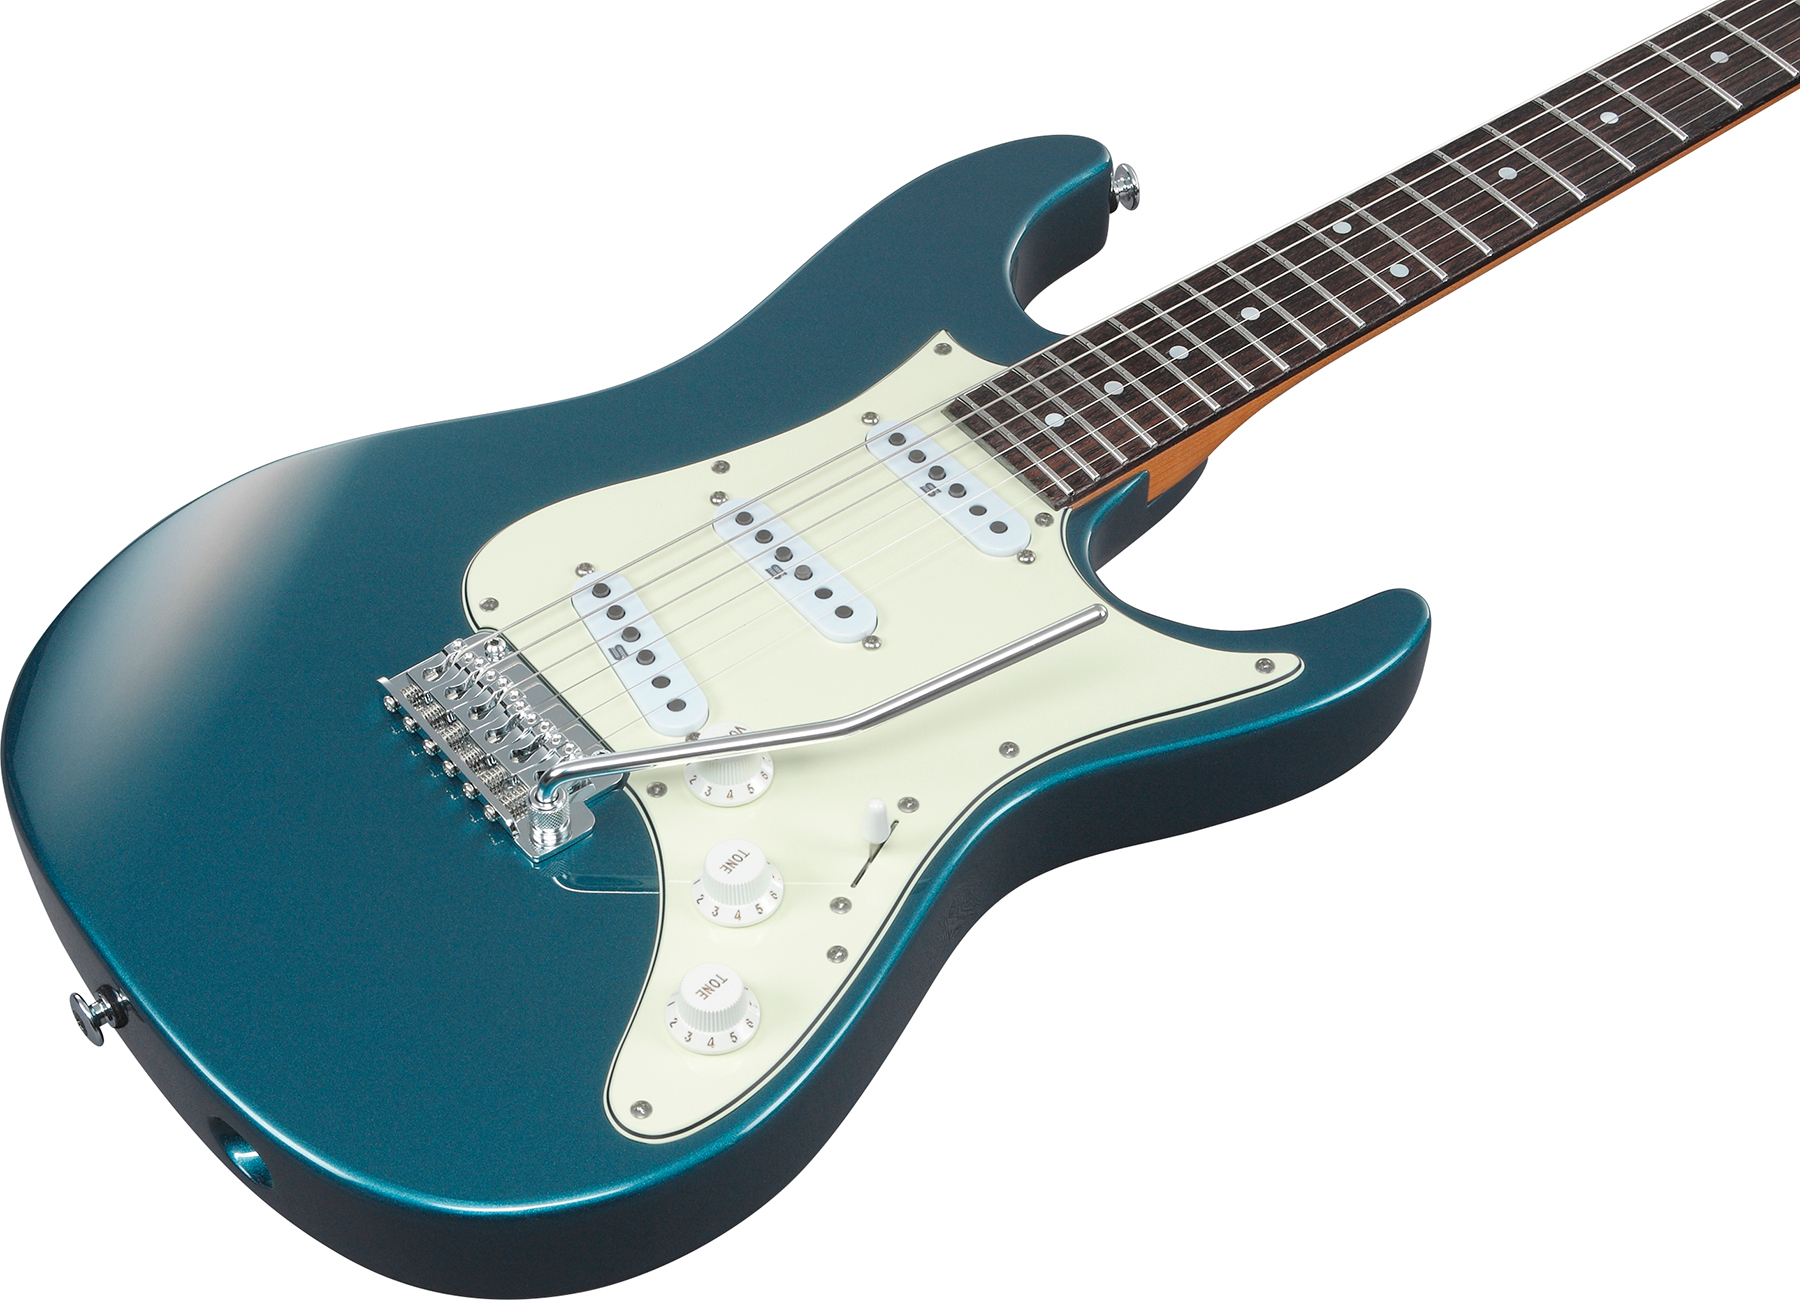 Ibanez Az2203n Atq Prestige Jap 3s Seymour Duncan Trem Rw - Antique Turquoise - Str shape electric guitar - Variation 2